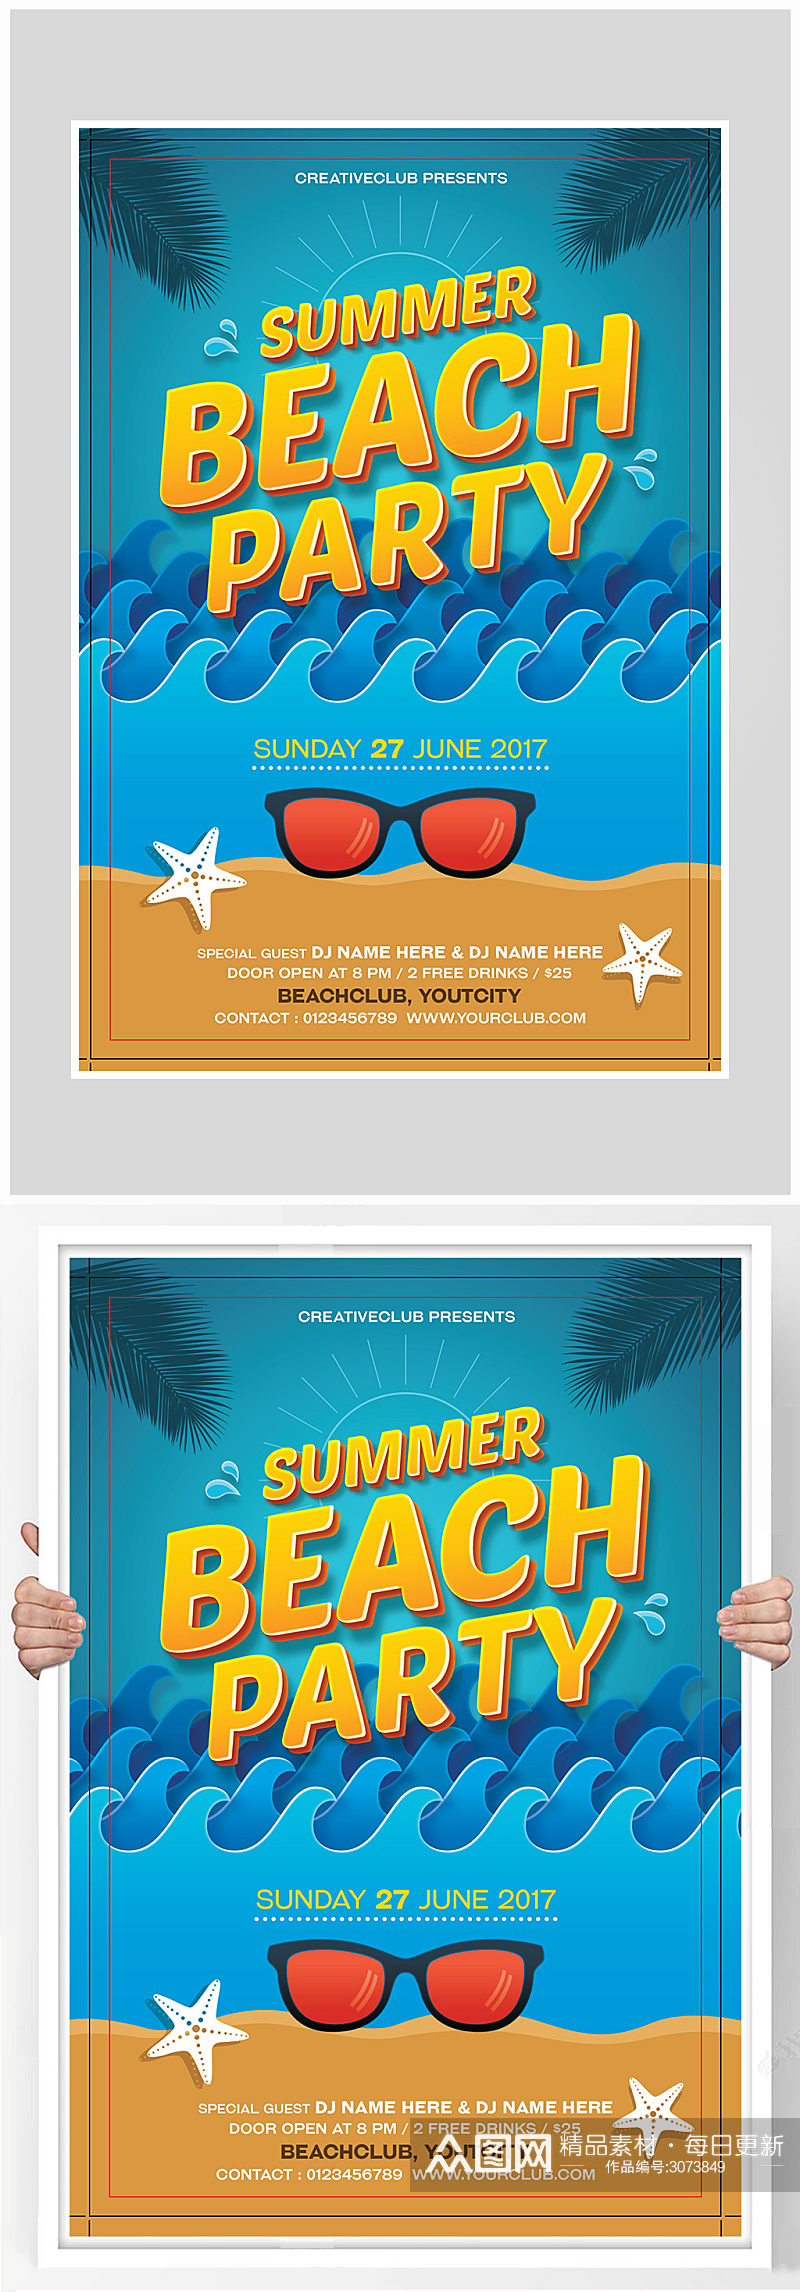 创意卡通沙滩派对海报设计素材